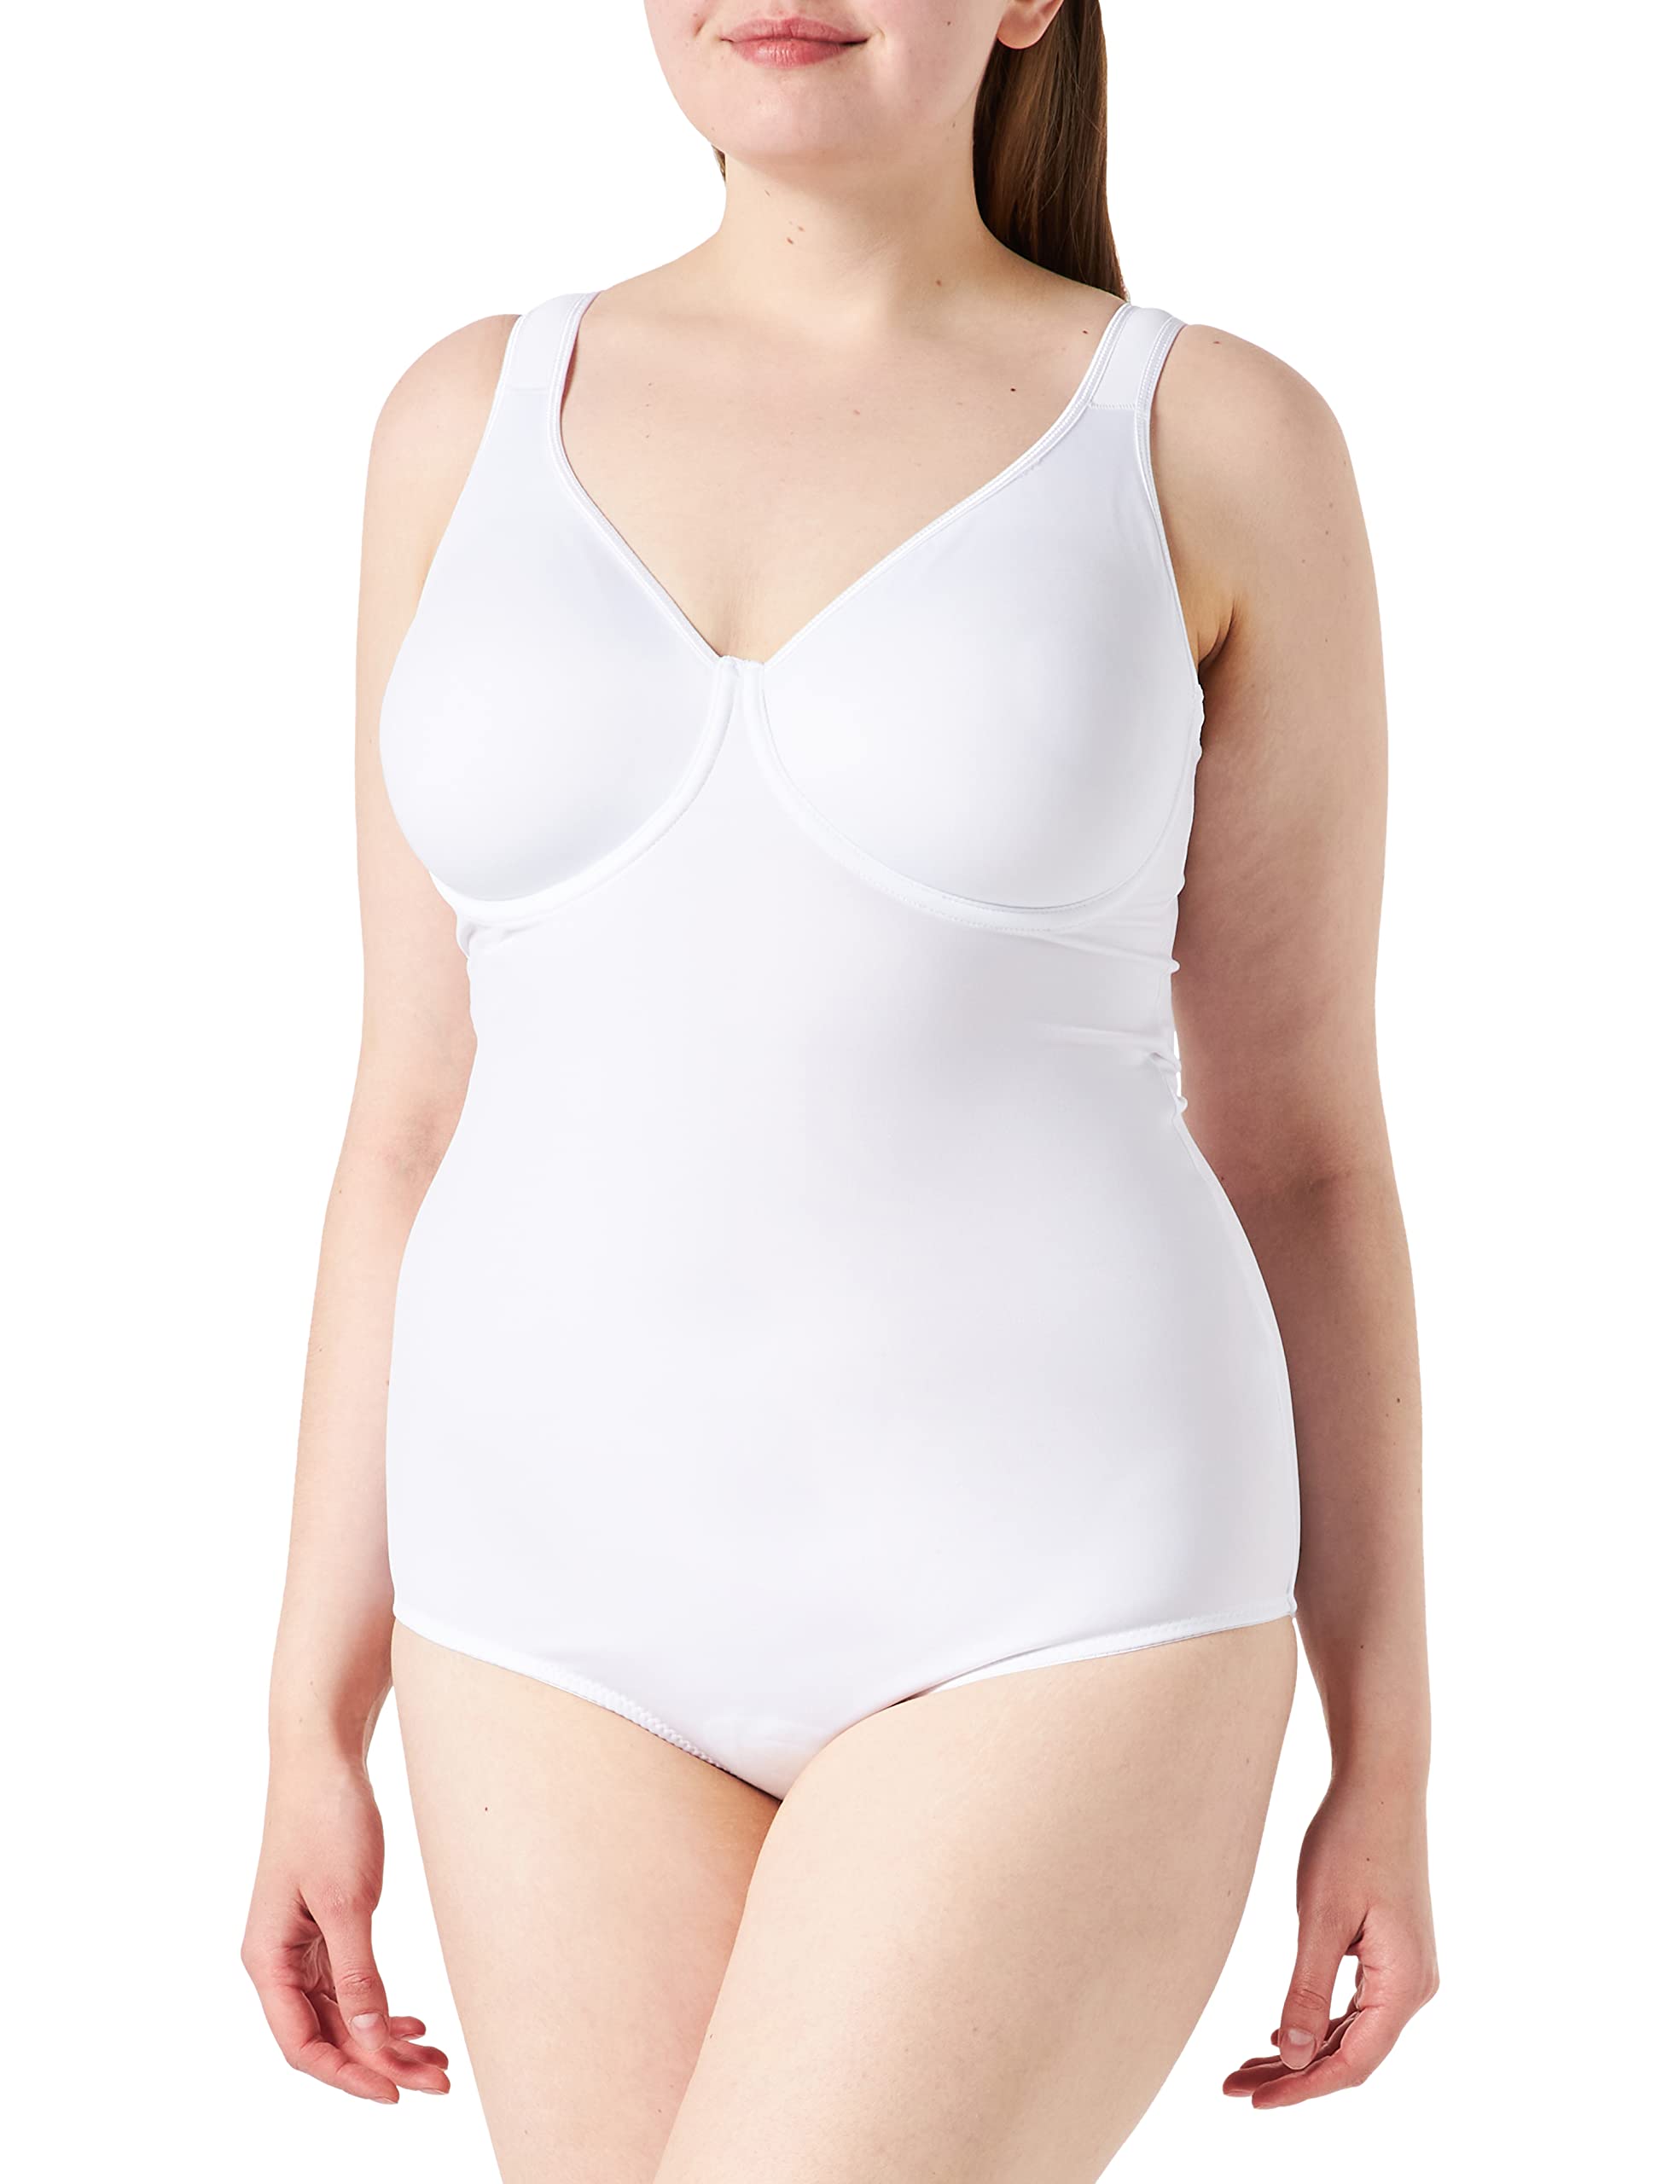 Sassa Damen Formender Body doppelt vorgeformt 00903, Einfarbig, Gr. 80C, Weiß (Weiß 00100)